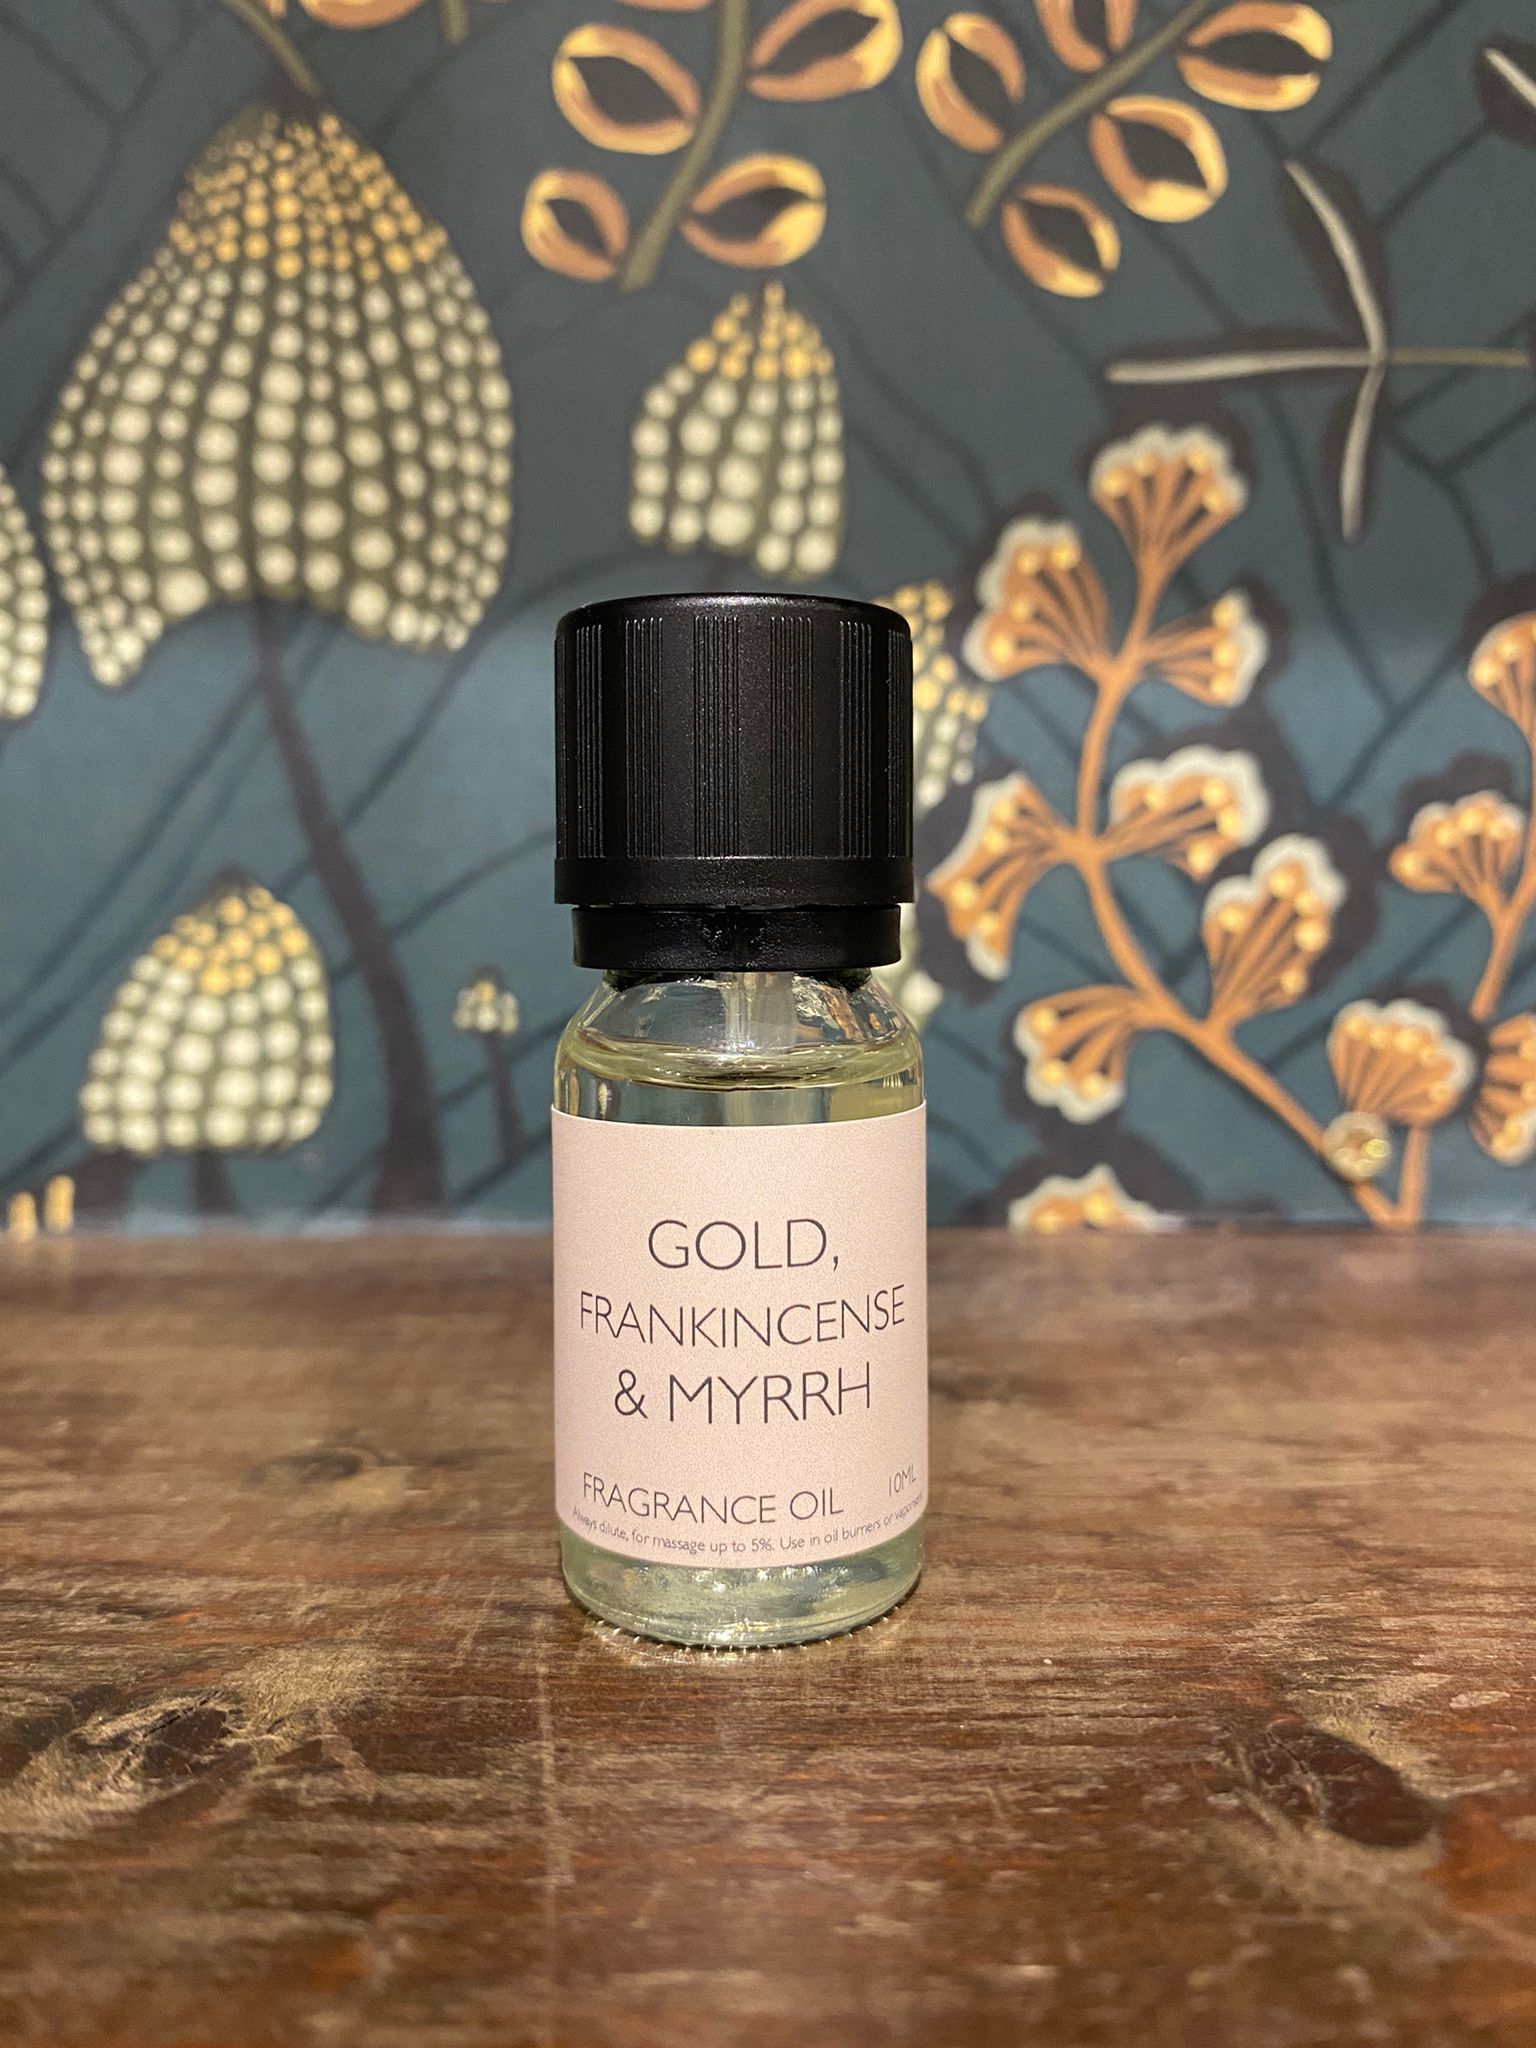 Gold, Frankincense & Myrrh Fragrance Oil 10ml